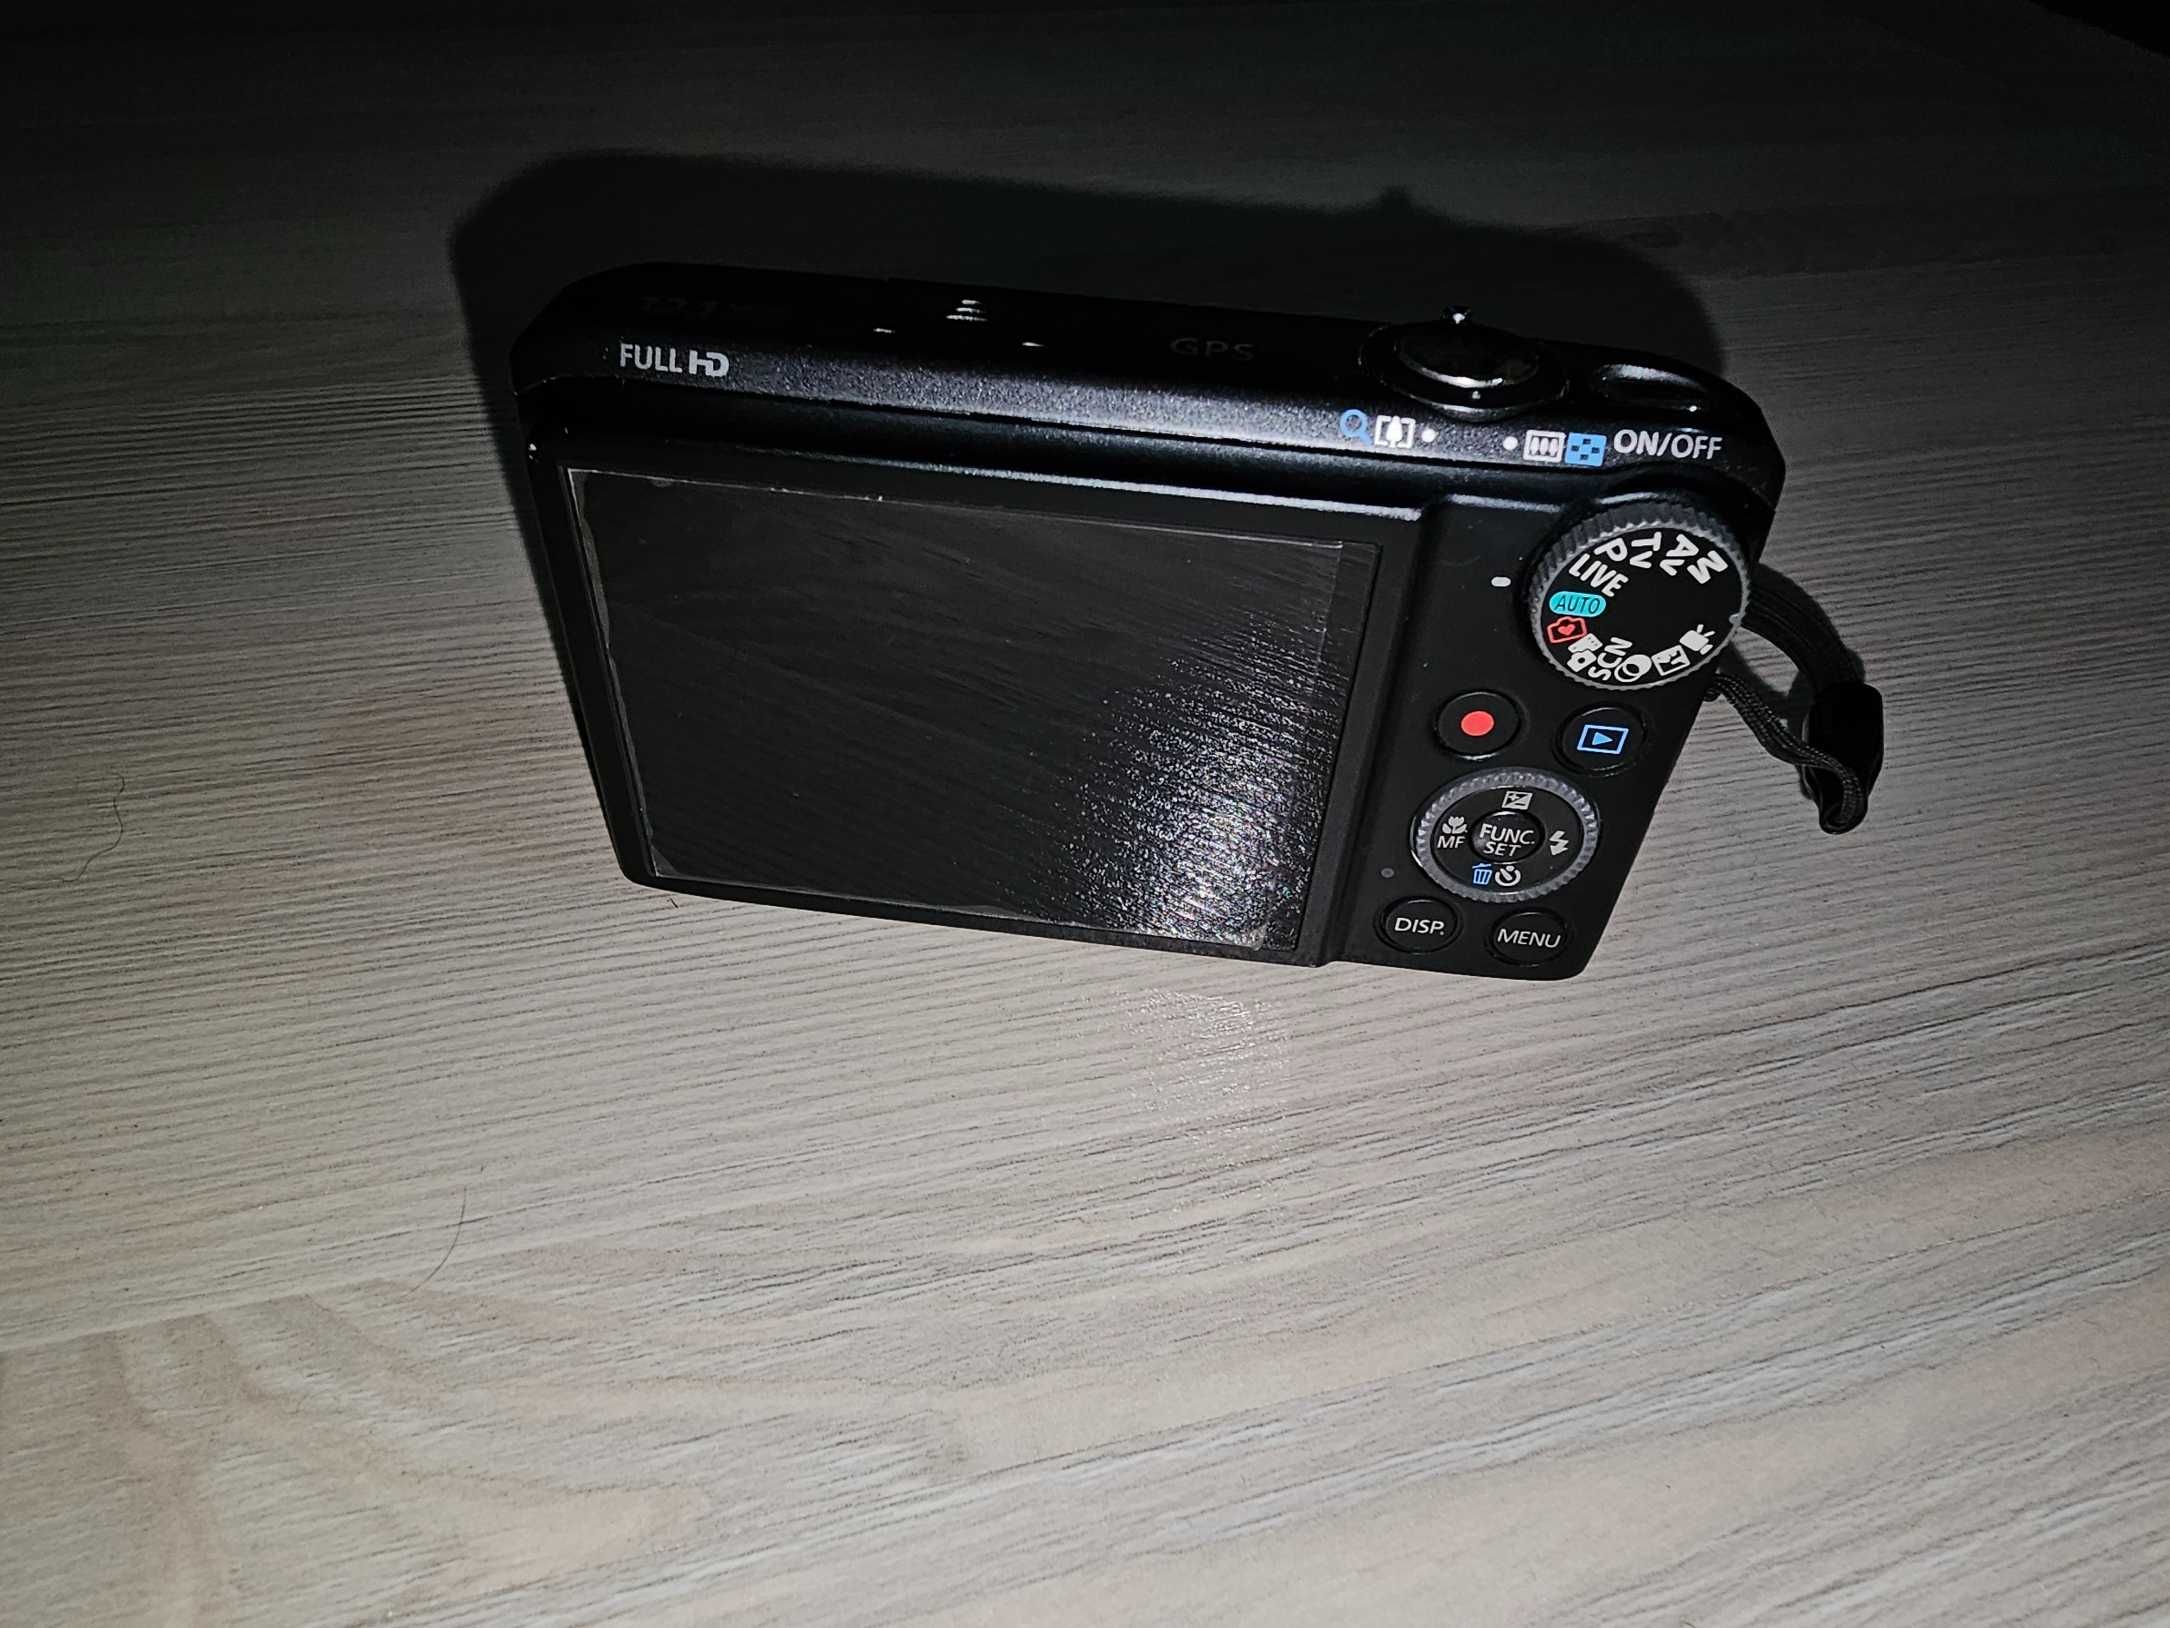 Canon PowerShot SX260 HS 12.1MP